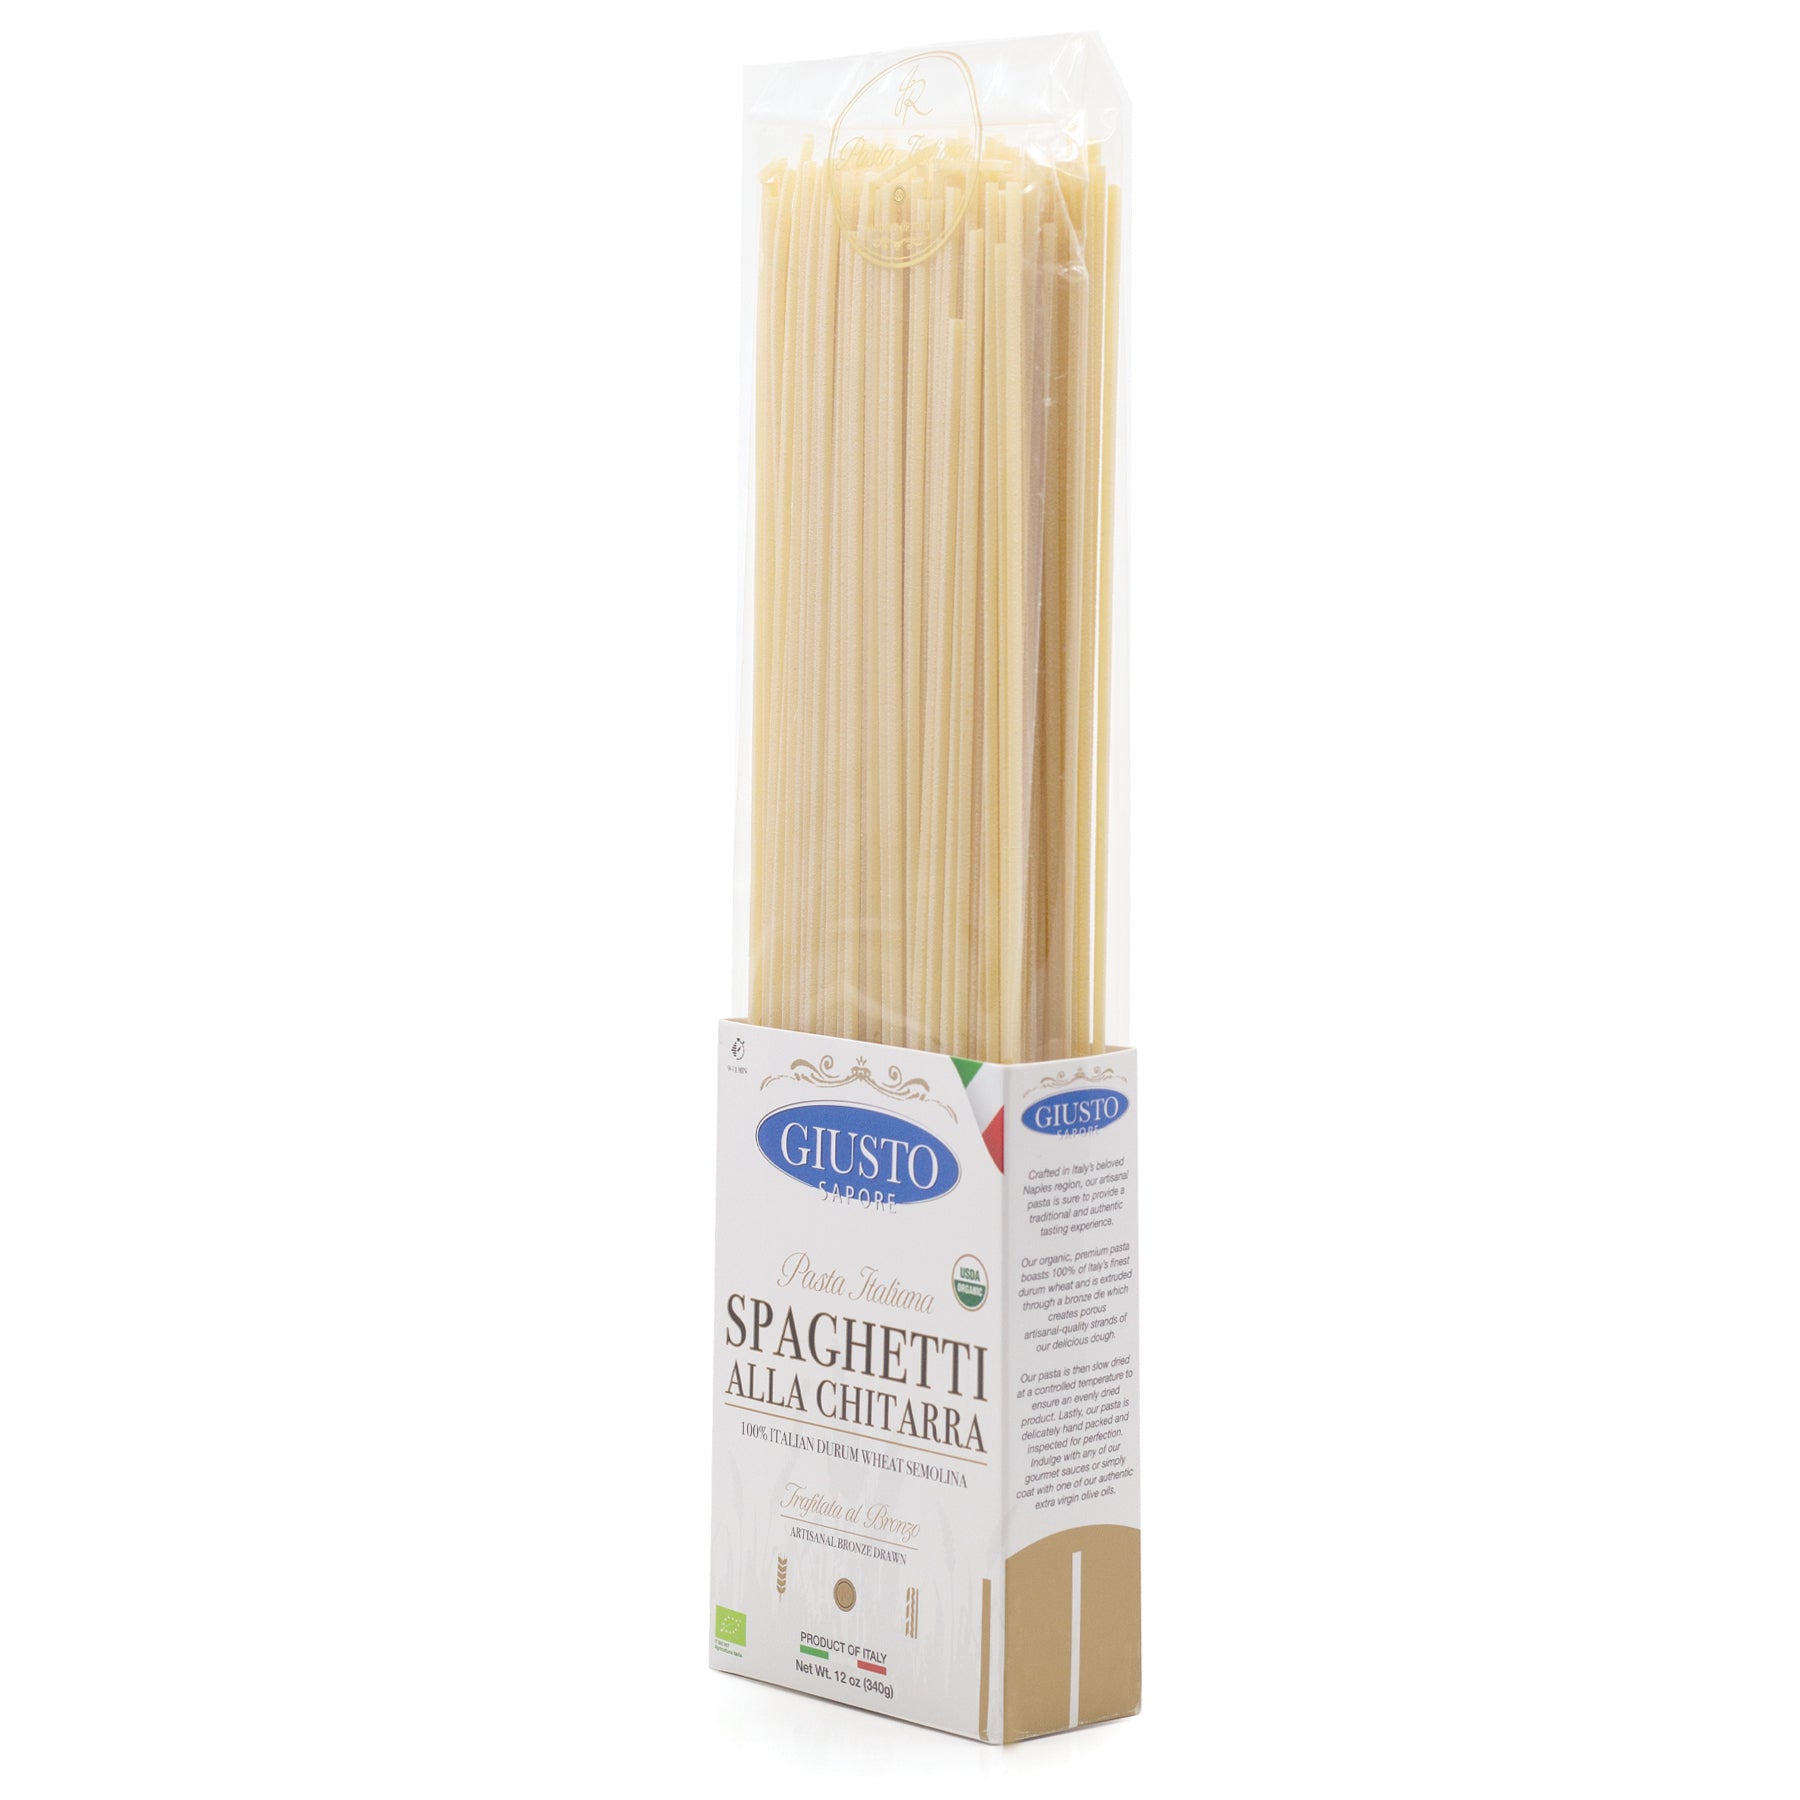 Giusto Sapore Italian Pasta - Spaghetti alla Chitarra 454g